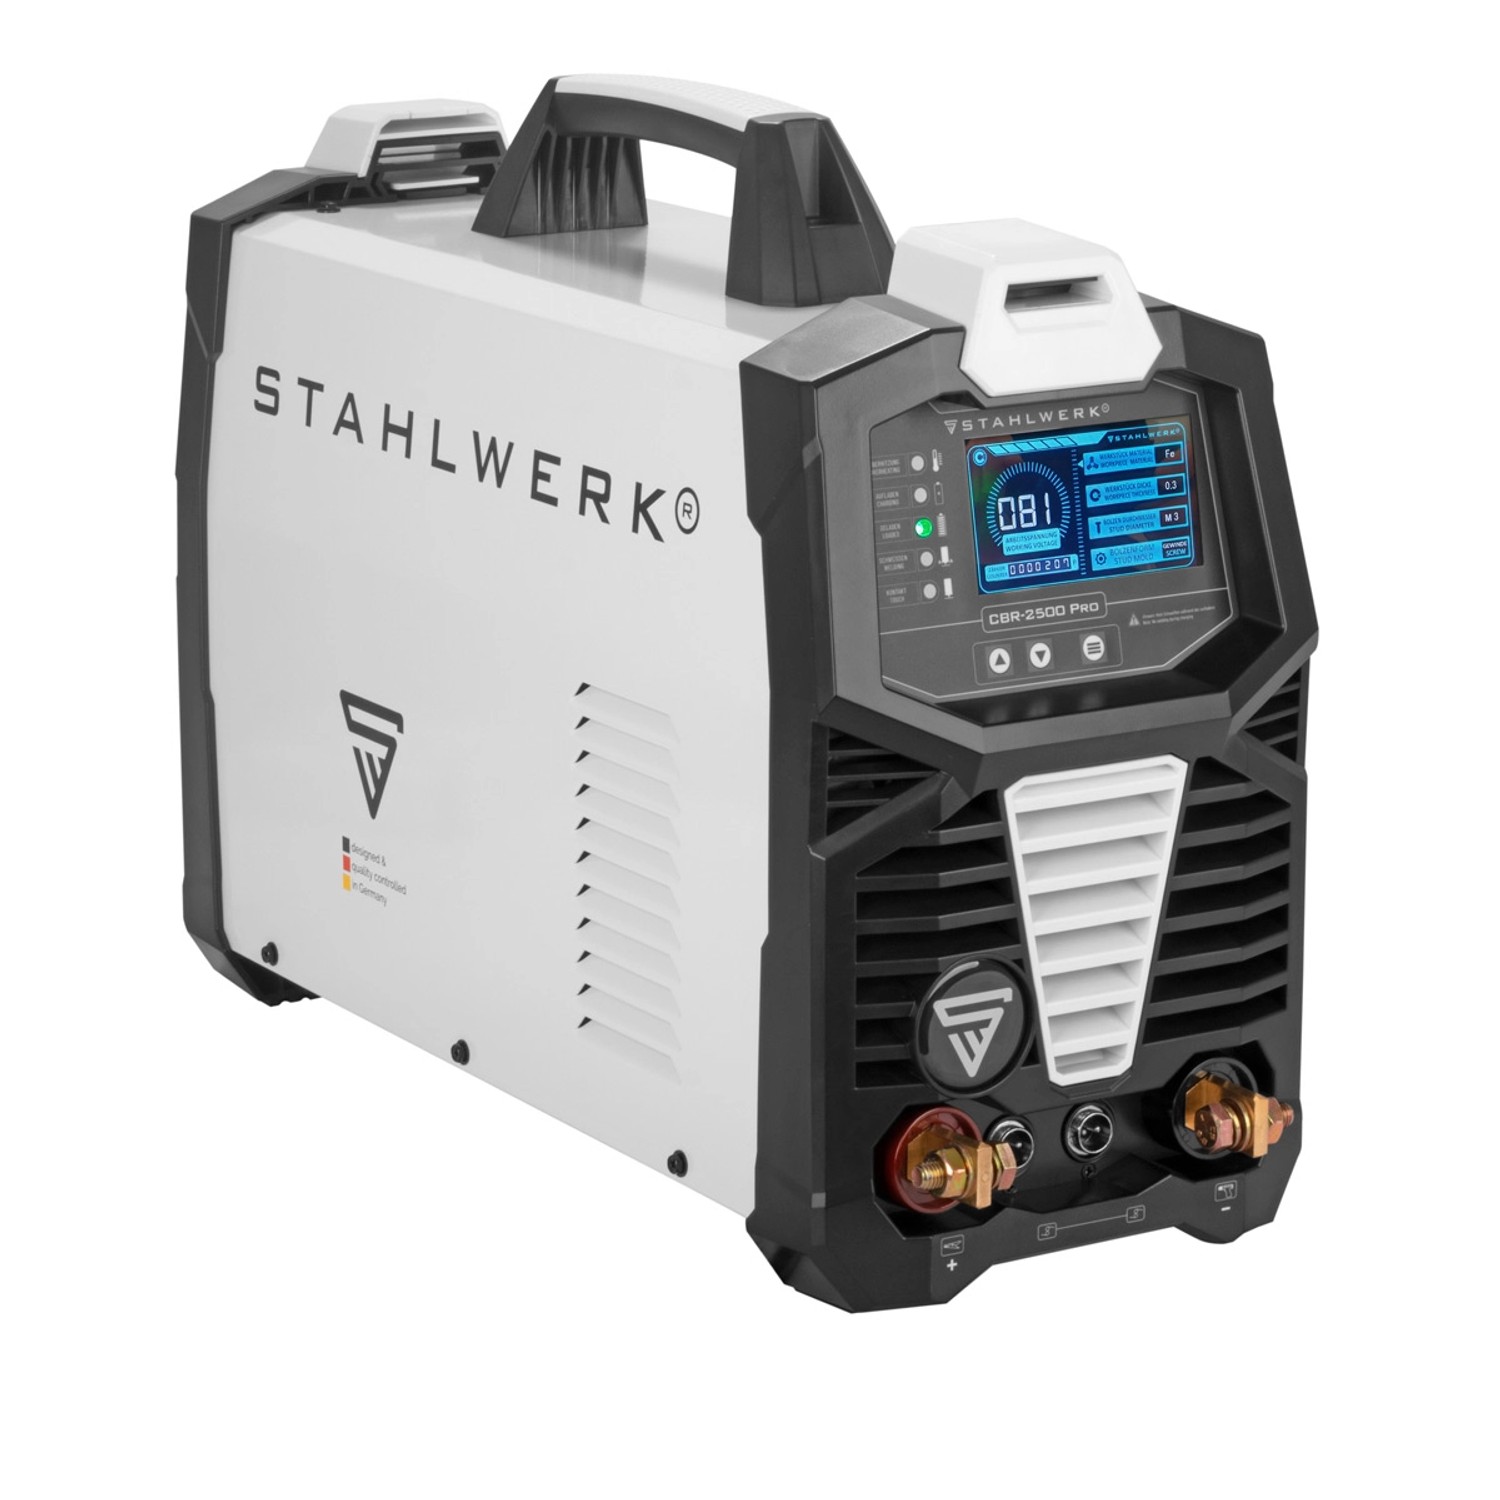 STAHLWERK Profi-Ausbeulspotter CBR-2500 Pro 2.500 J und 230 V Alu Smart Repair von STAHLWERK